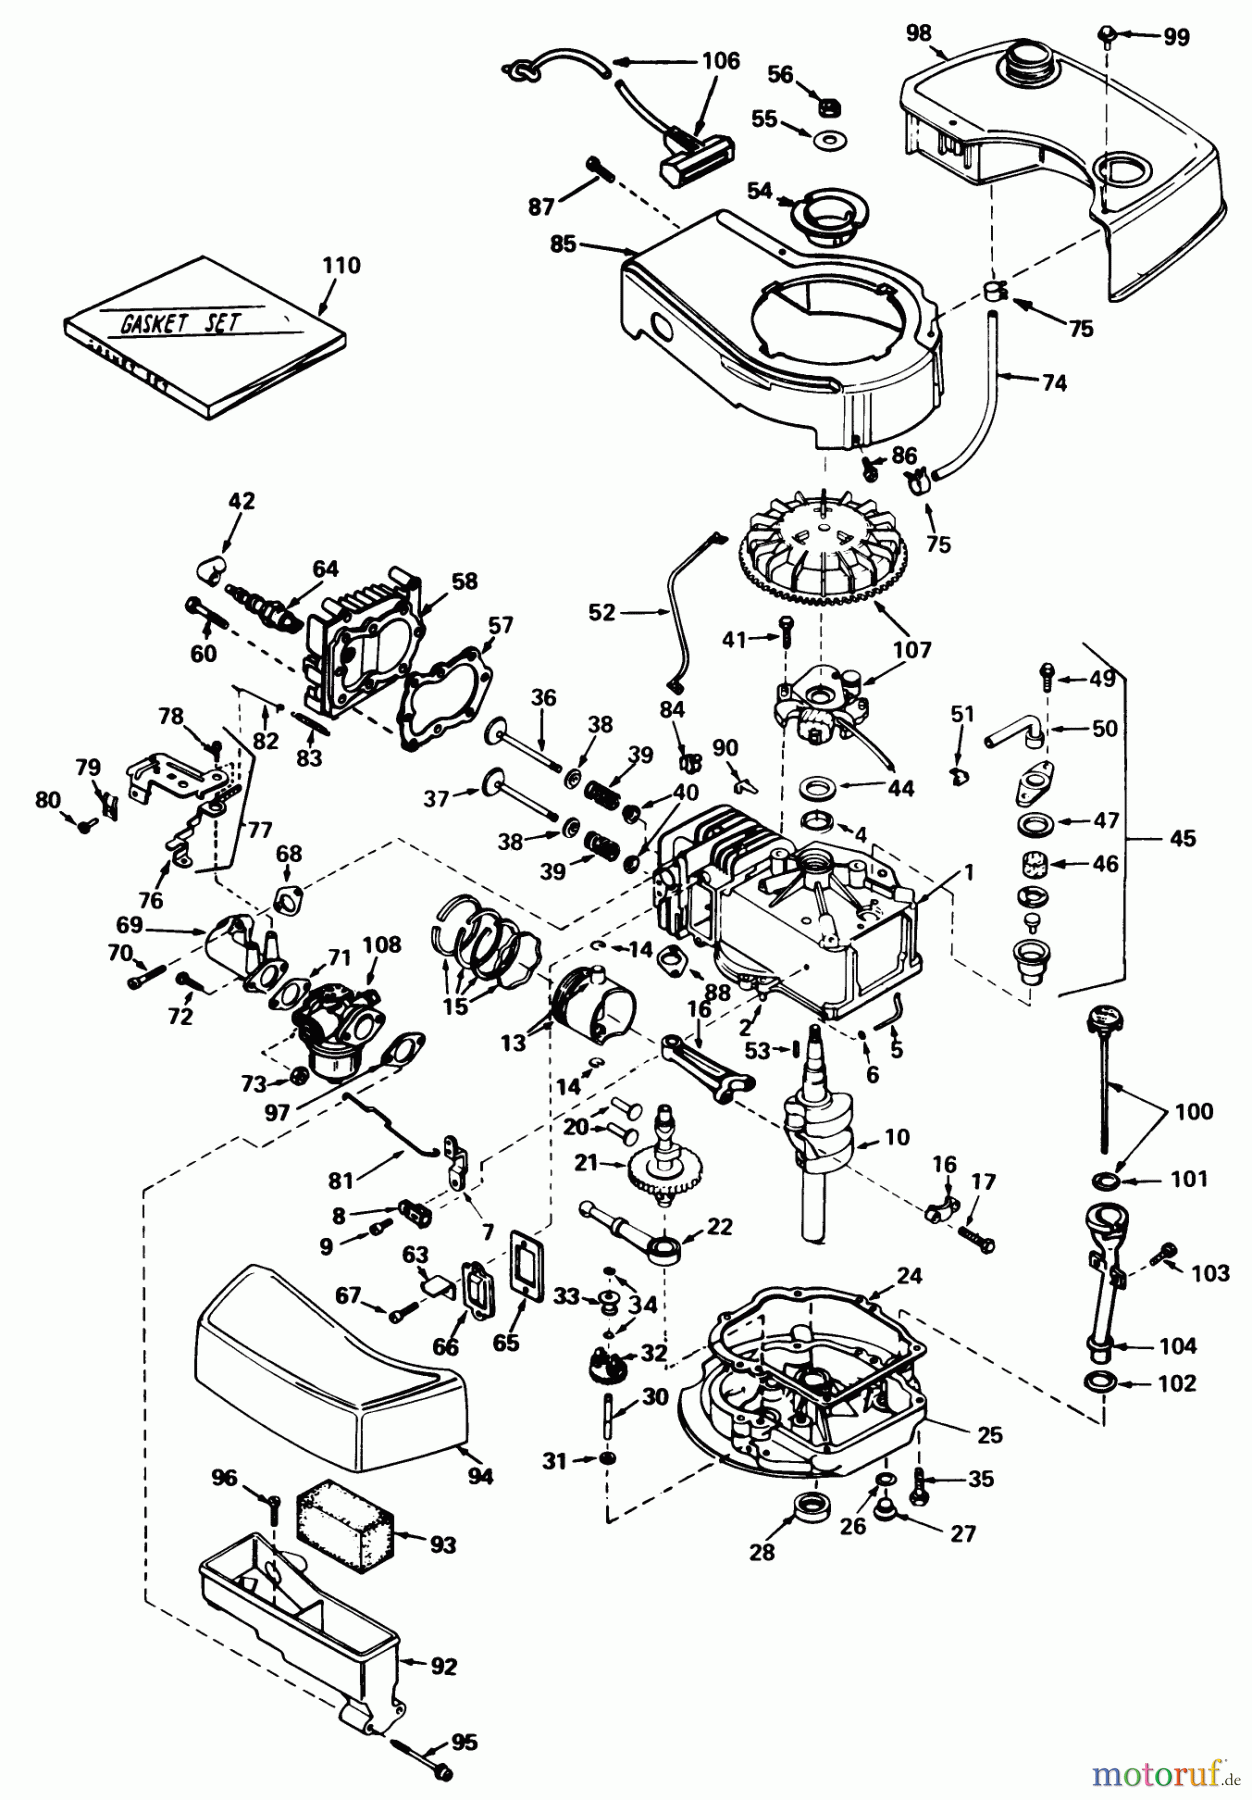  Toro Neu Mowers, Walk-Behind Seite 2 21738 - Toro Whirlwind Lawnmower, 1978 (8000001-8999999) ENGINE TECUMSEH MODEL NO. TNT 100-10056A (MOWER MODEL NO. 21738) #2